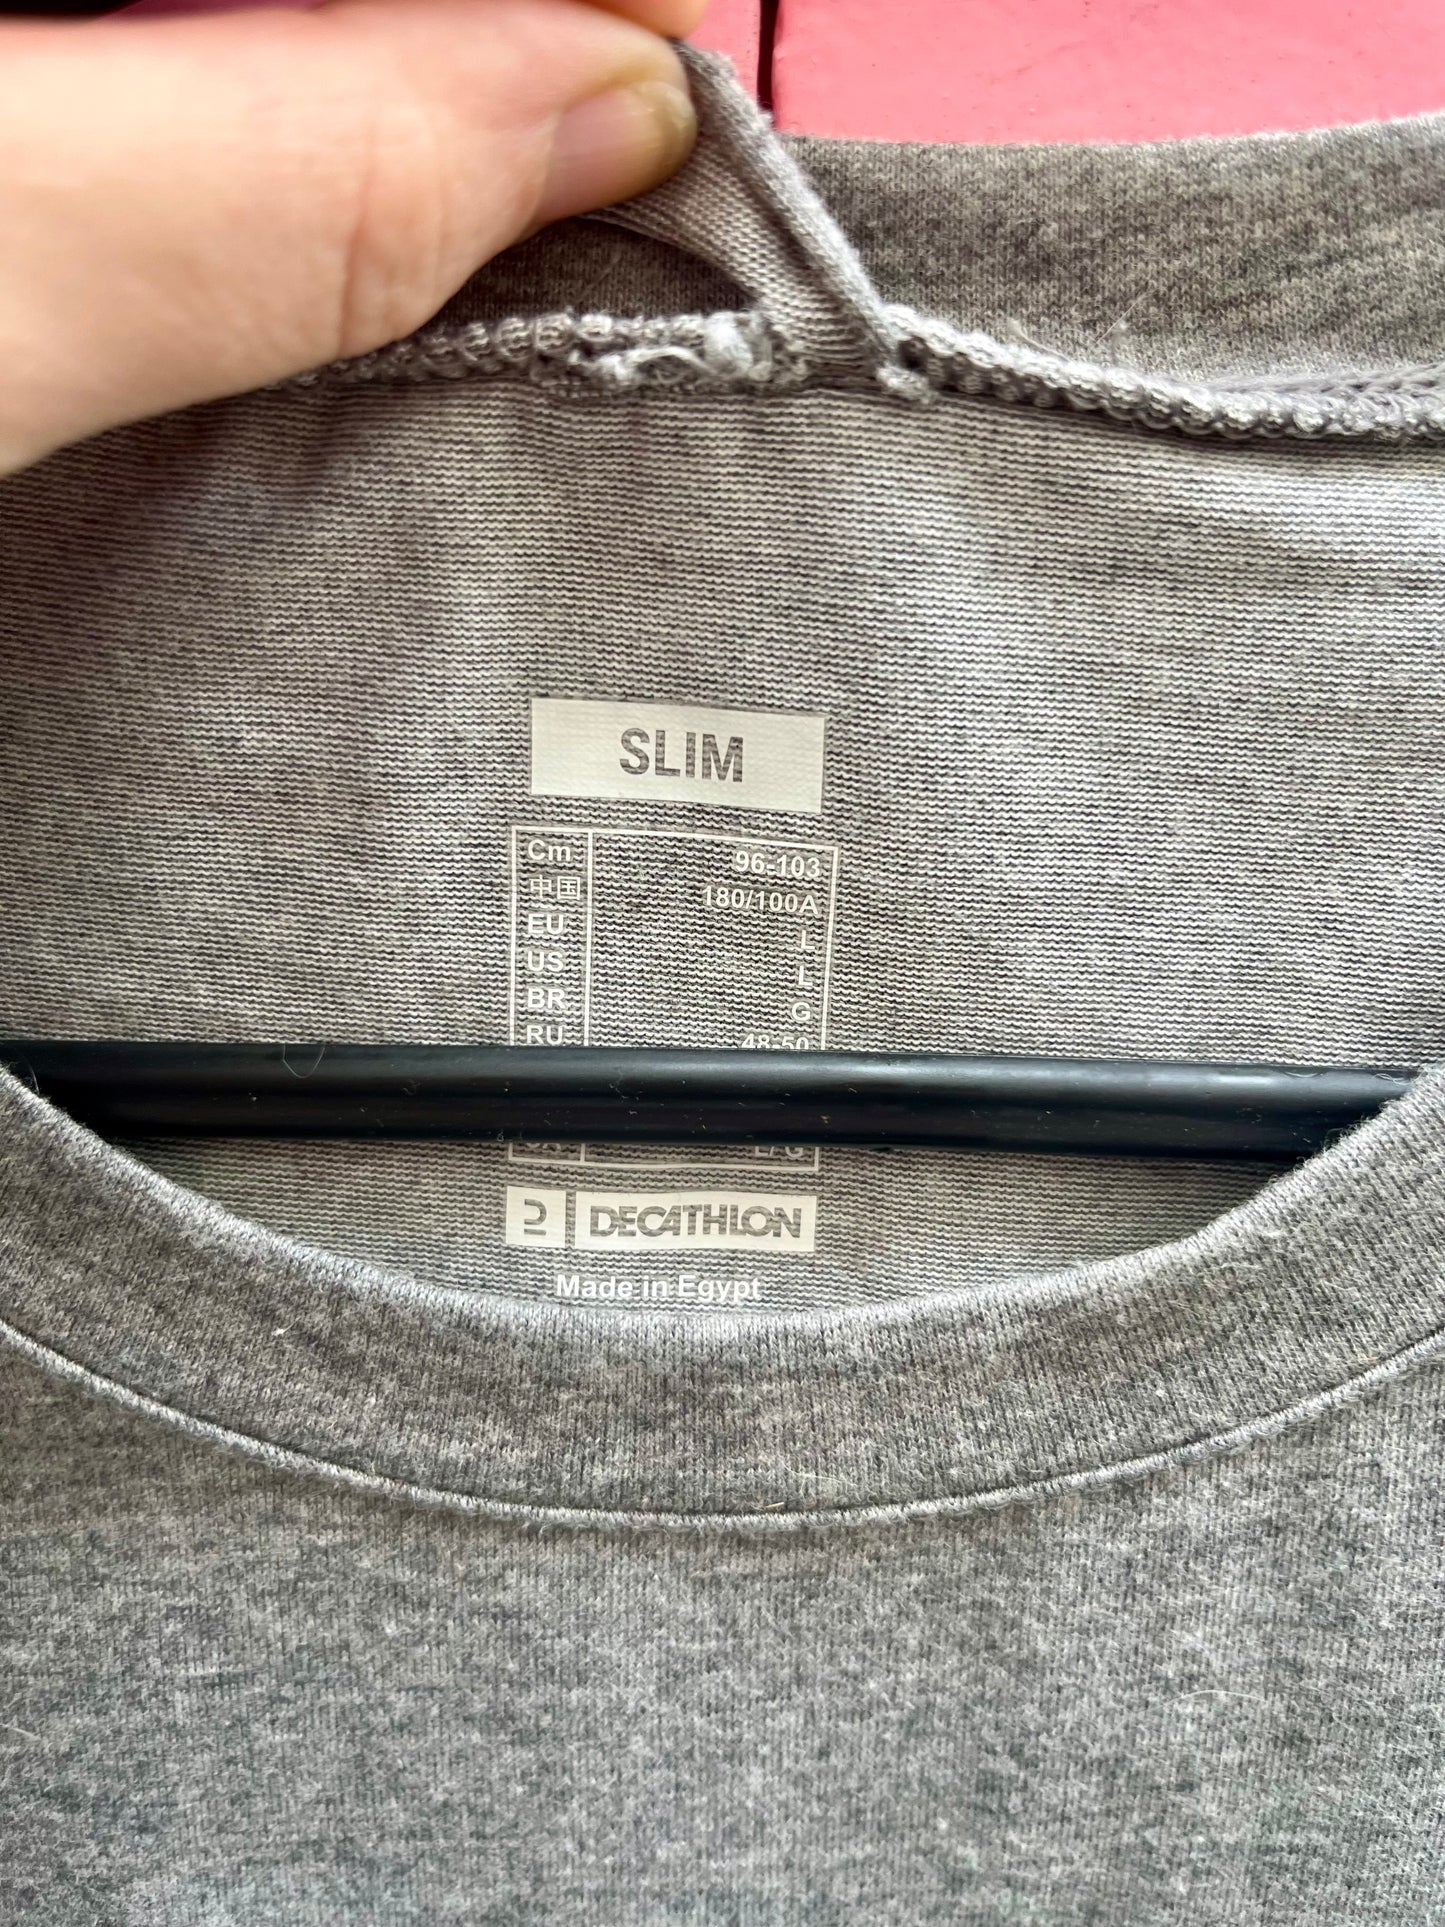 Le t-shirt gris, taille M